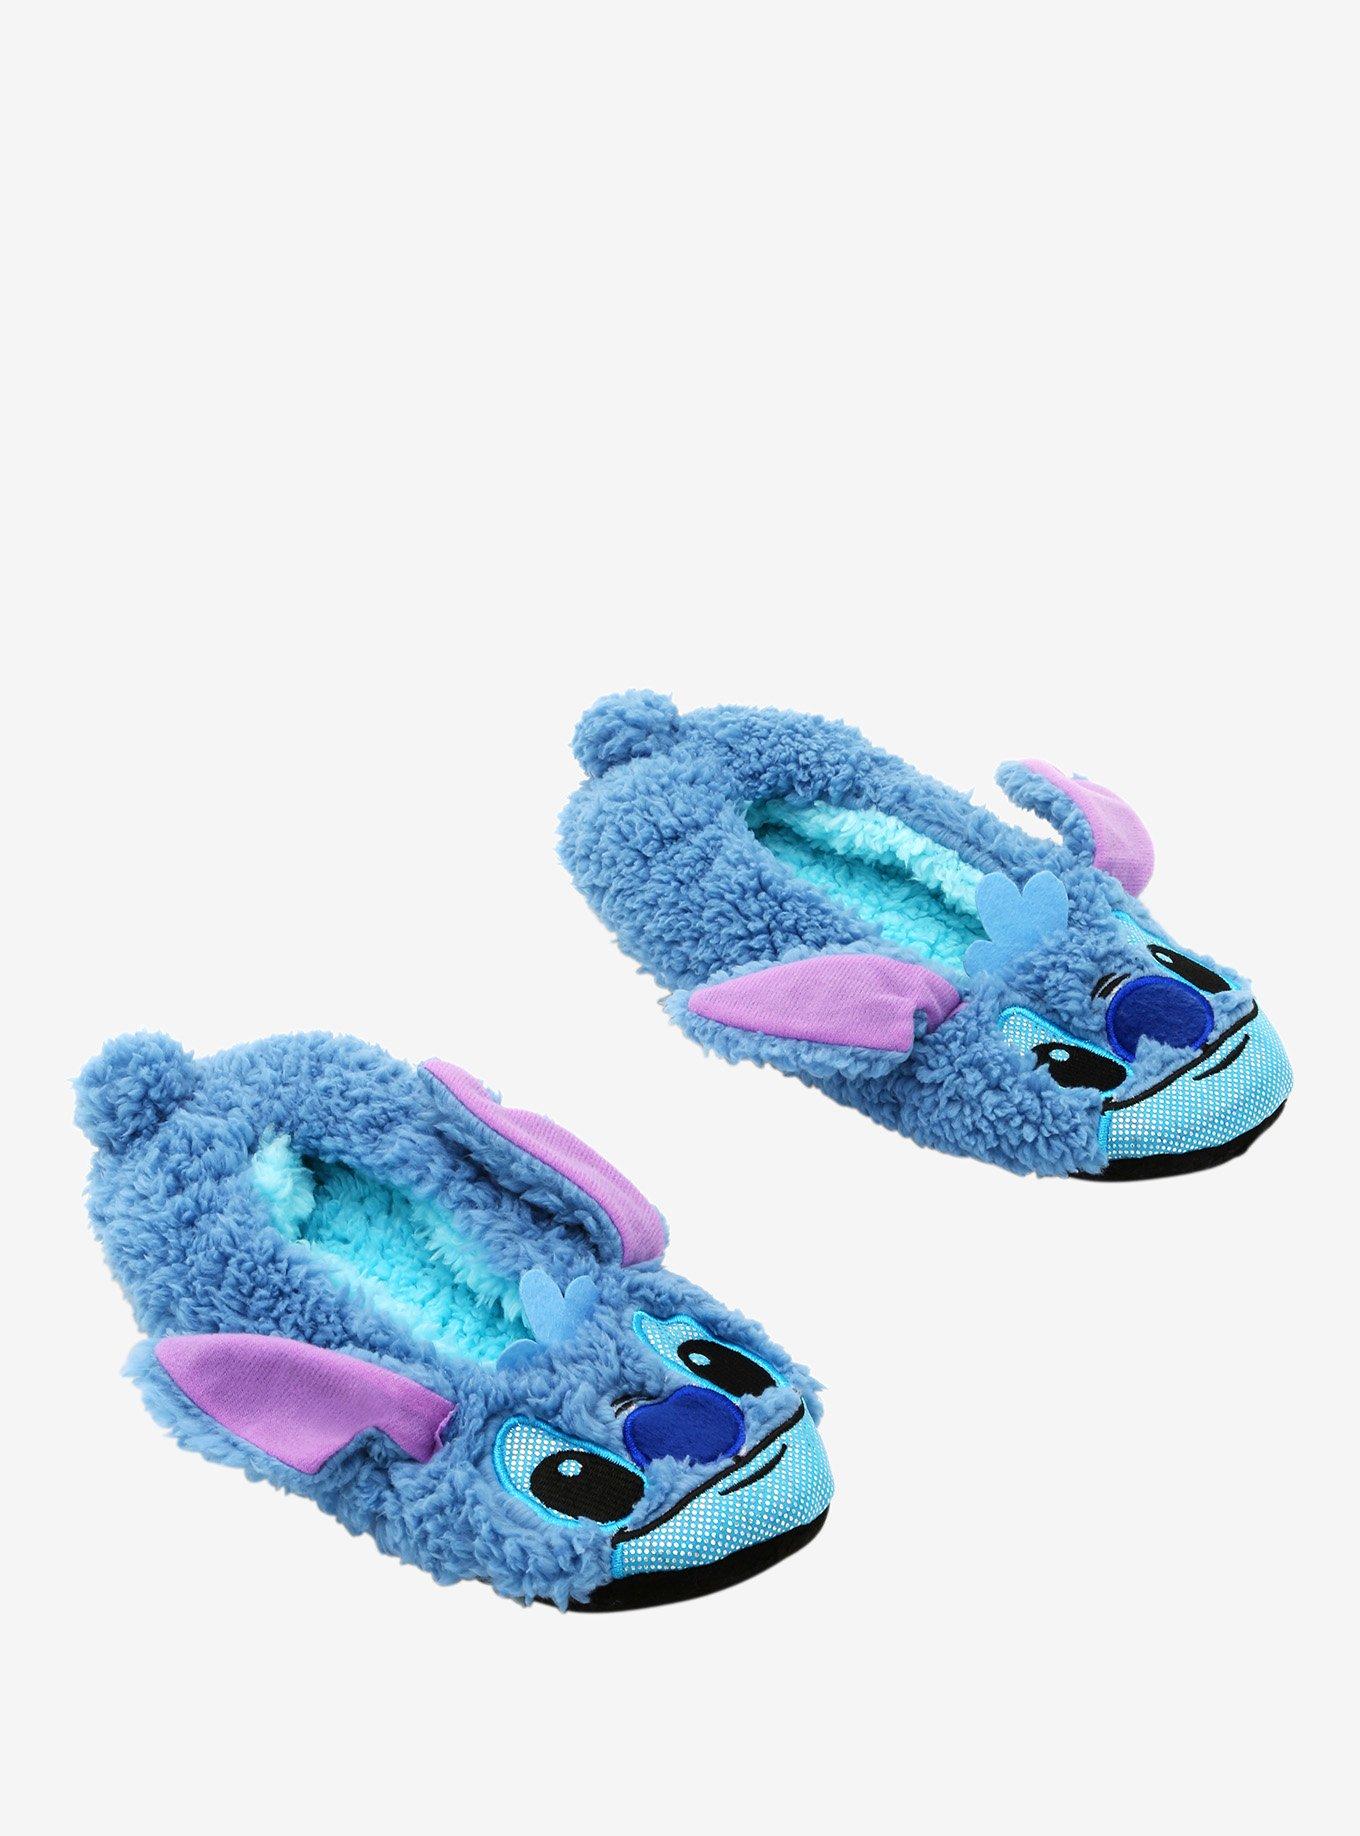 Disney Lilo & Stitch Sparkle Stitch Cozy Slippers, , hi-res